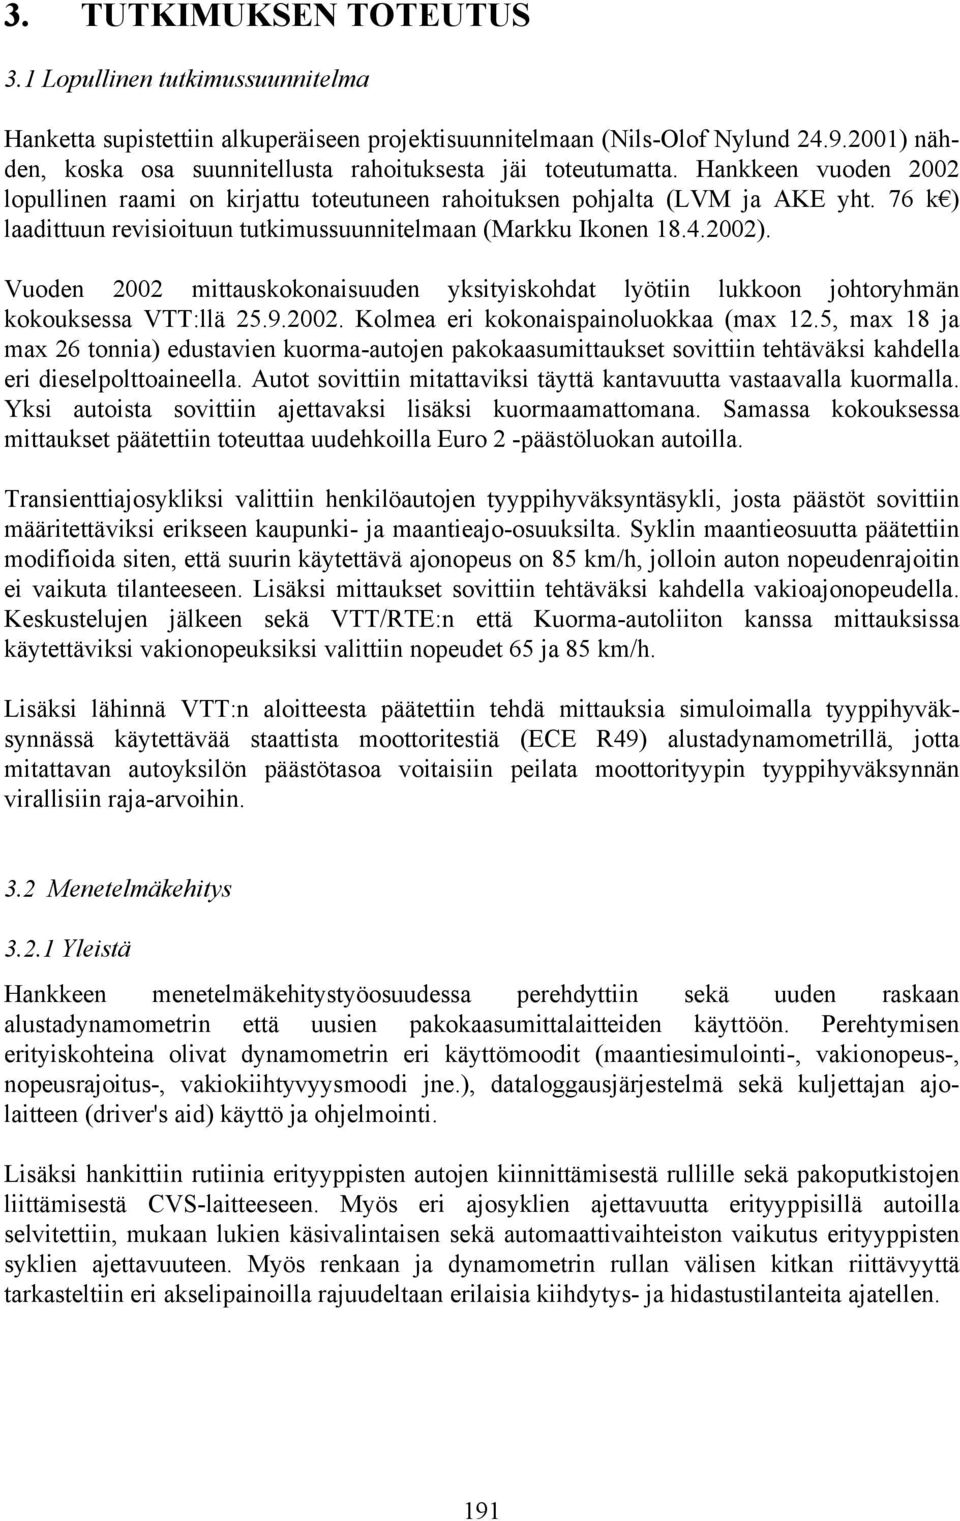 76 k ) laadittuun revisioituun tutkimussuunnitelmaan (Markku Ikonen 18.4.2002). Vuoden 2002 mittauskokonaisuuden yksityiskohdat lyötiin lukkoon johtoryhmän kokouksessa VTT:llä 25.9.2002. Kolmea eri kokonaispainoluokkaa (max 12.